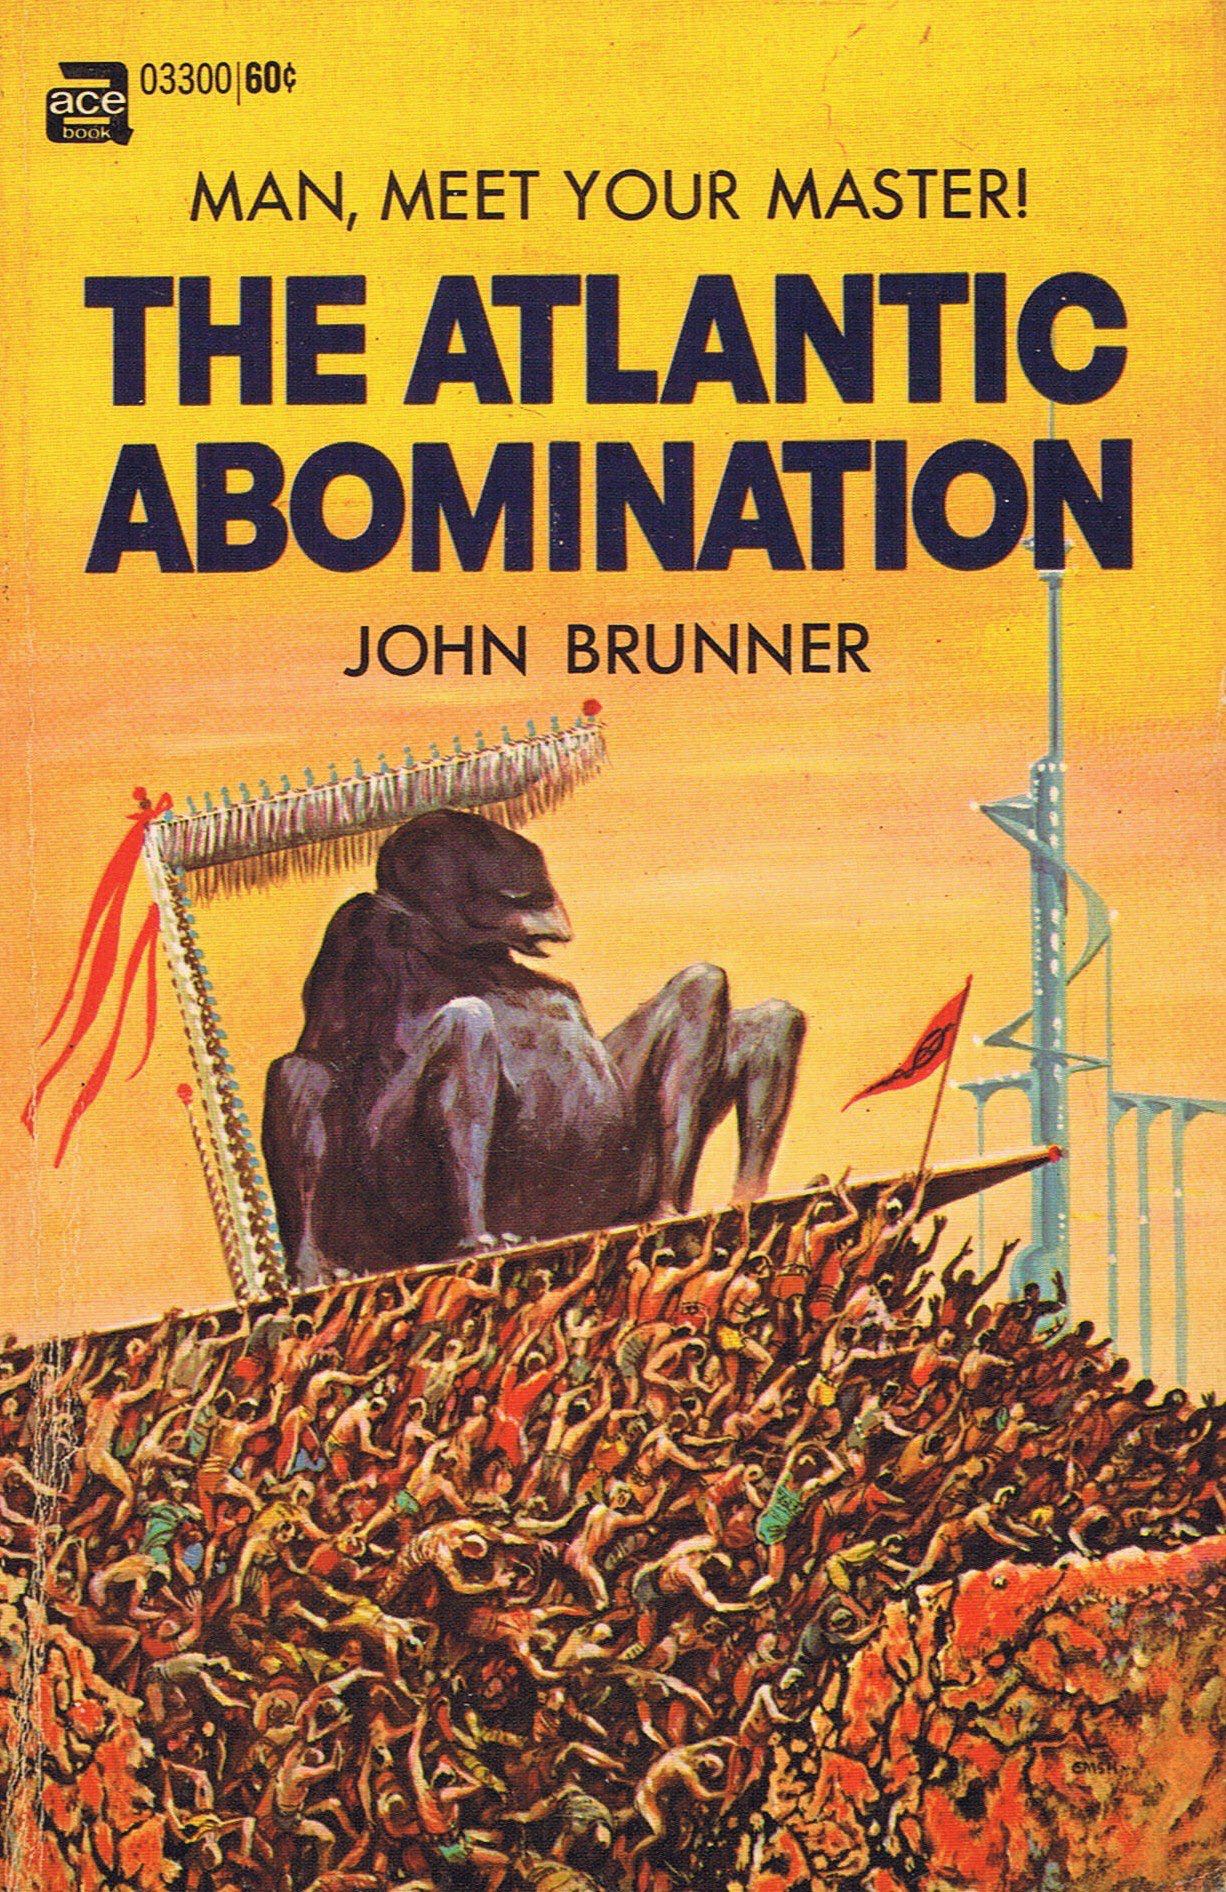 The Atlantic Abomination, by John Brunner